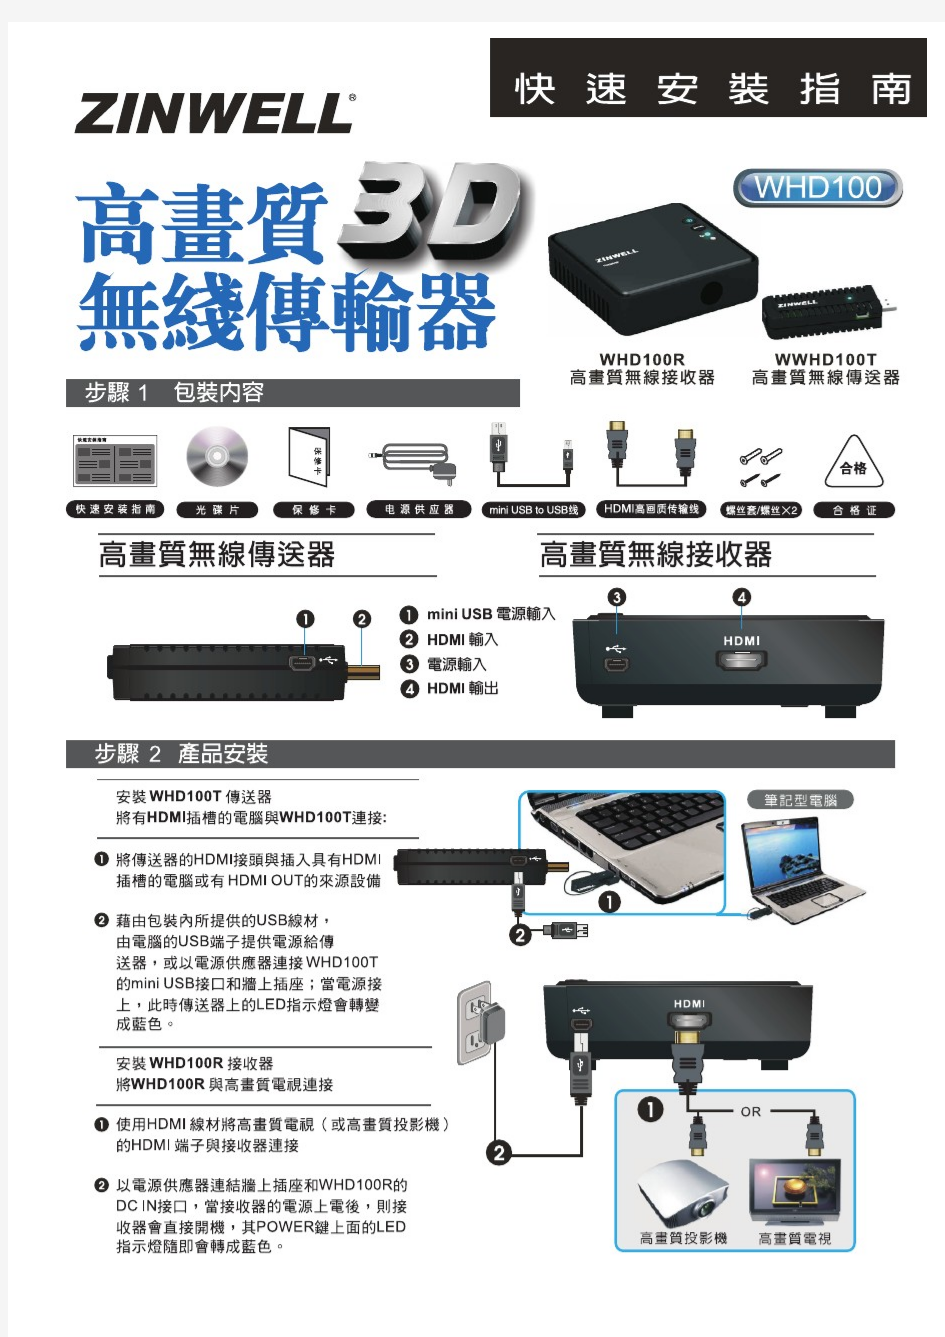 ZINWELL无线影音产品WHD100安装指南